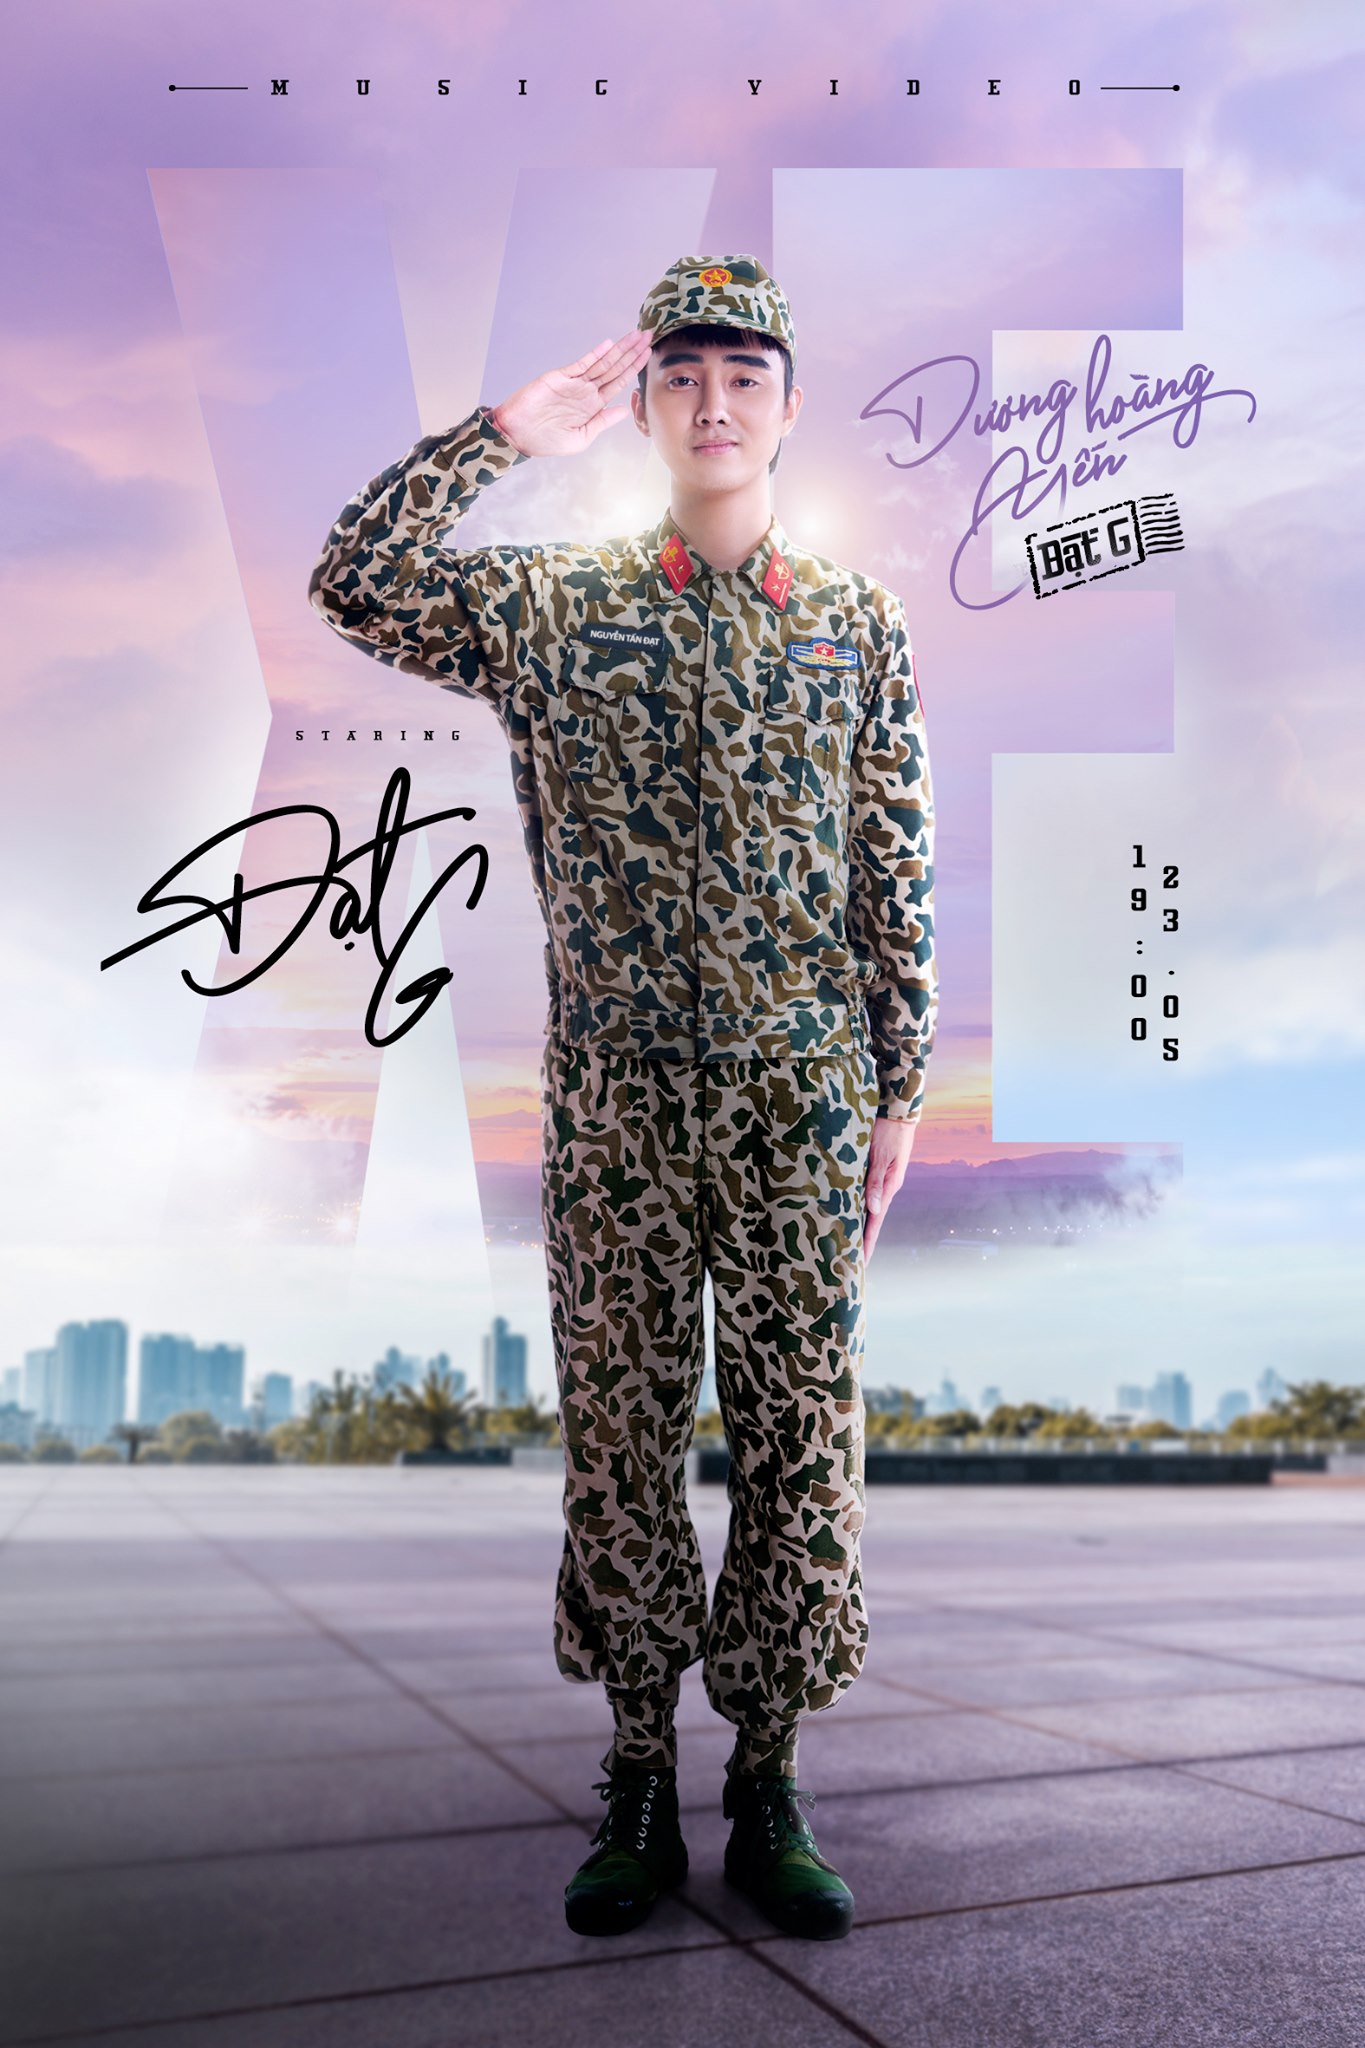 Dương Hoàng Yến tung poster MV kết hợp cùng Đạt G, lấy concept Sao Nhập Ngũ với dàn khách mời quen thuộc